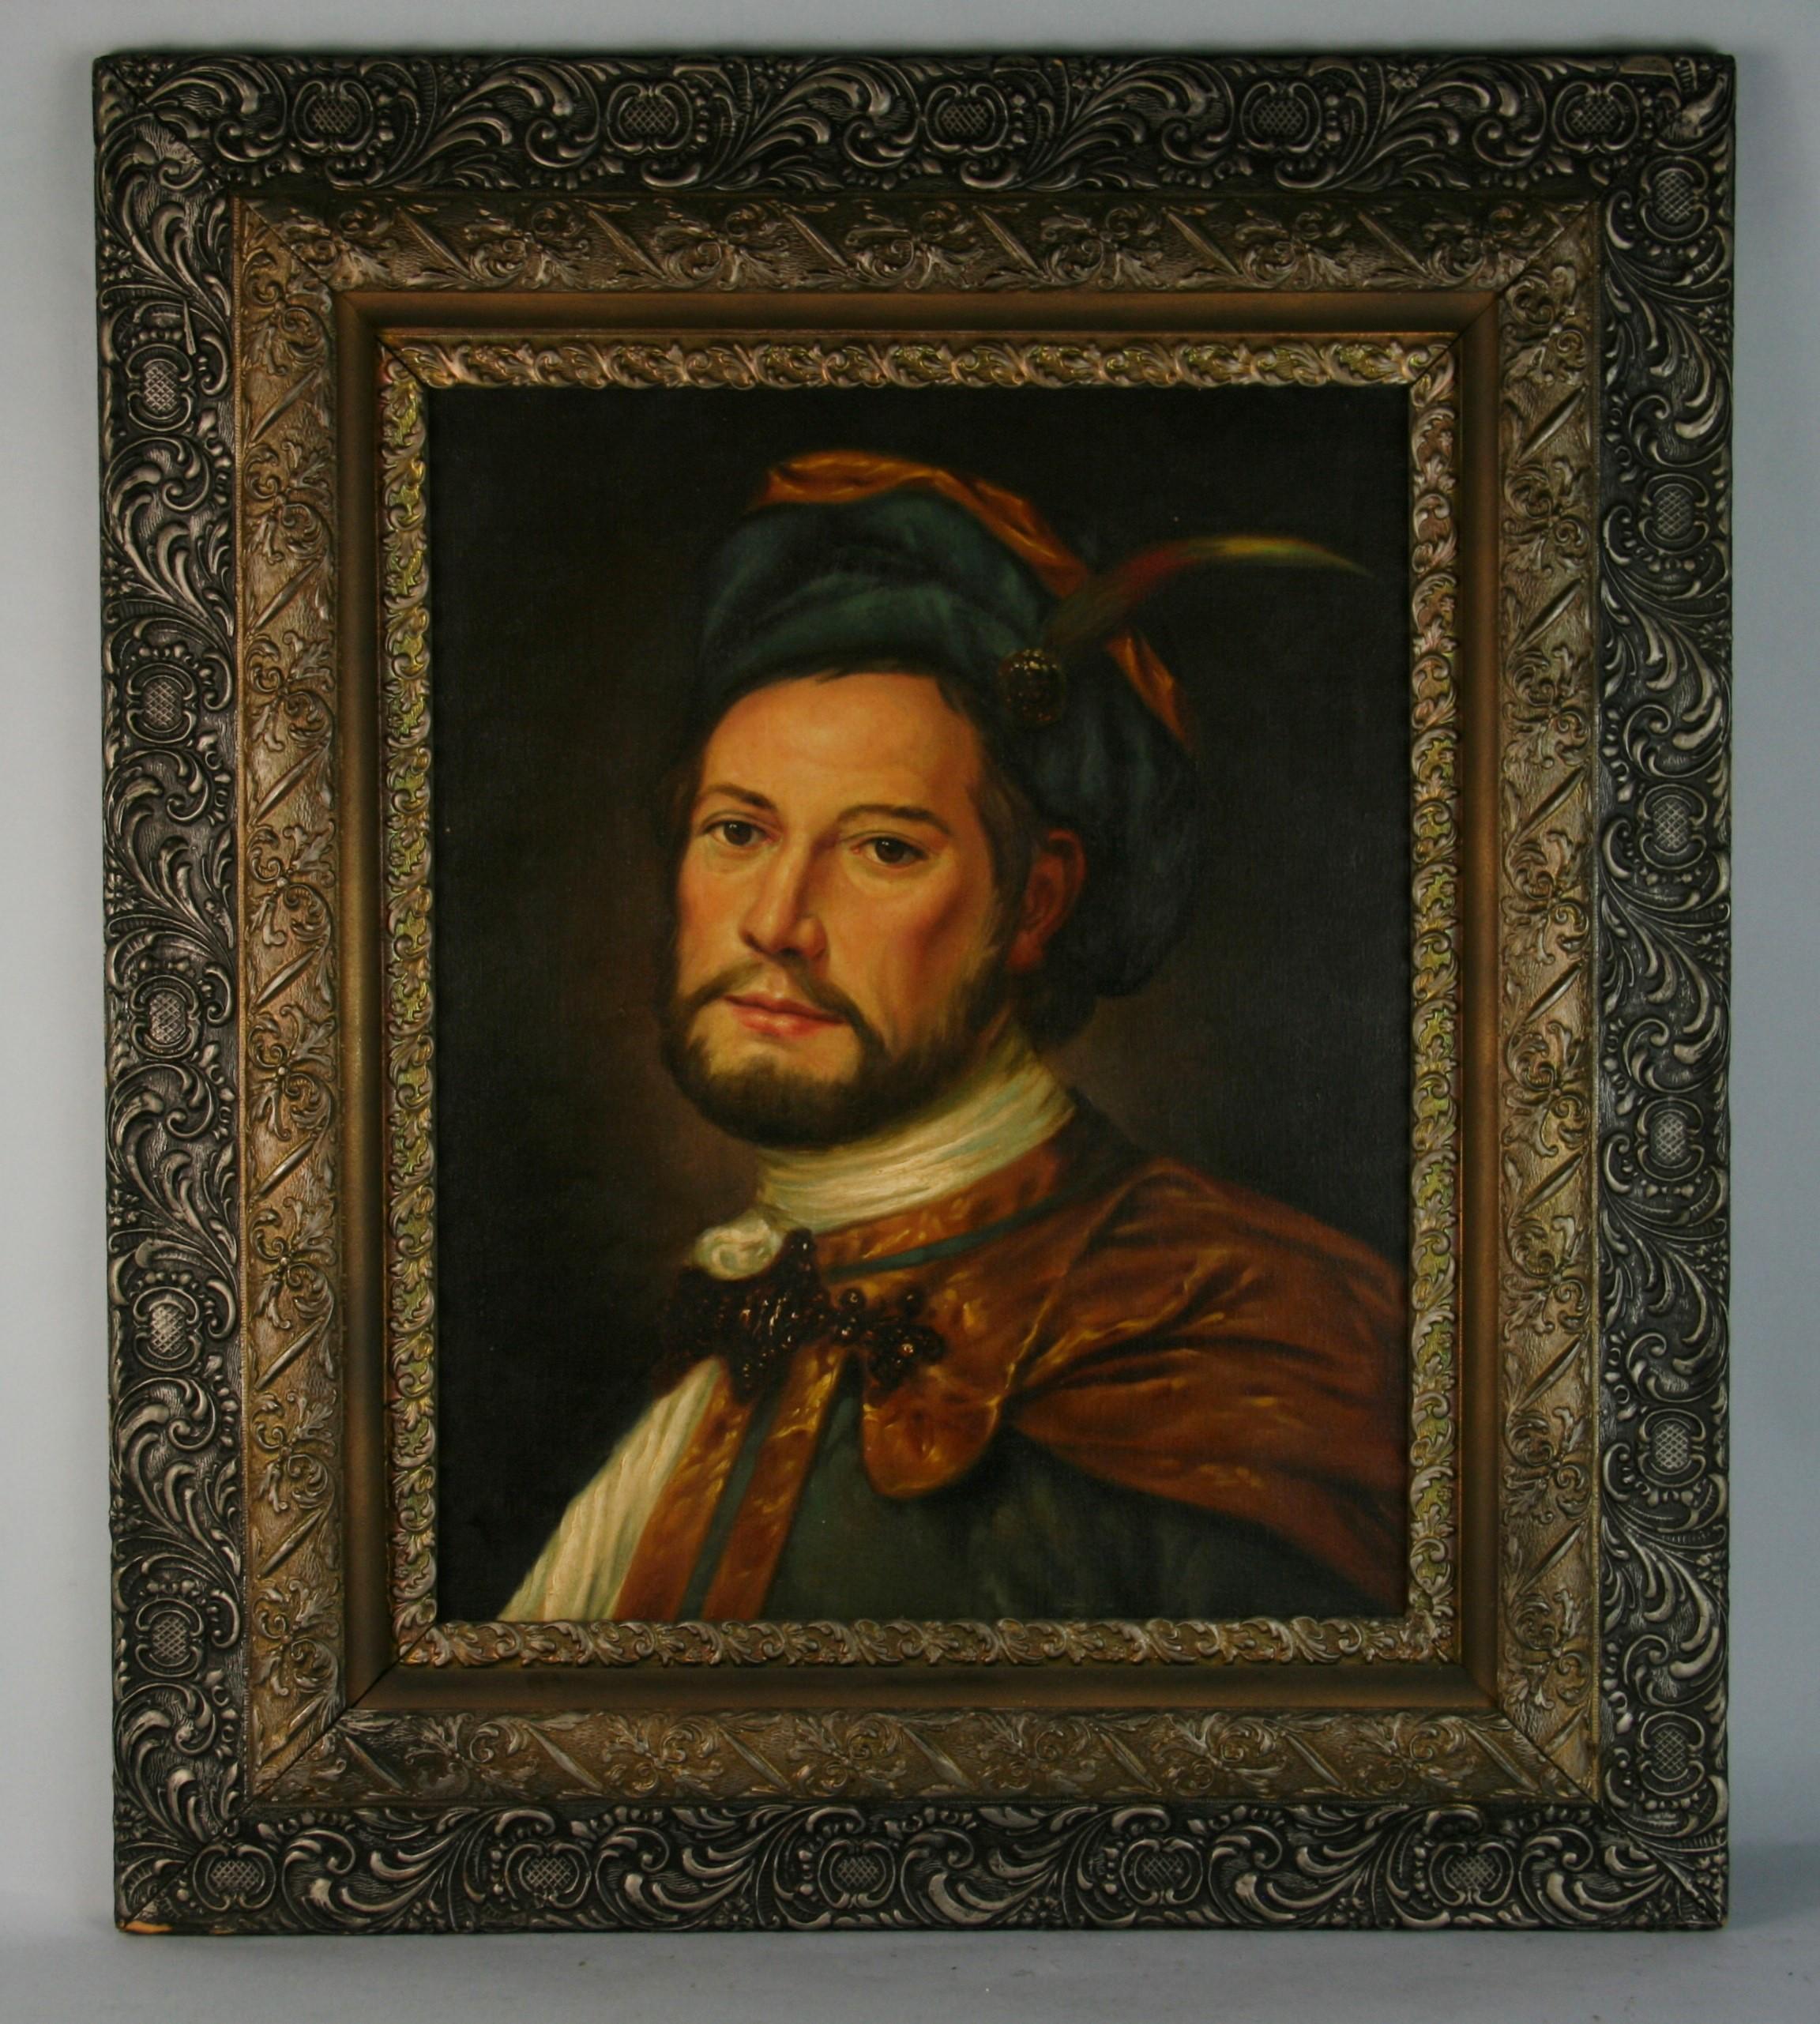  Antike italienische Renaissance Prince Porträt Ölgemälde 1940 – Painting von Alessandro Milesi